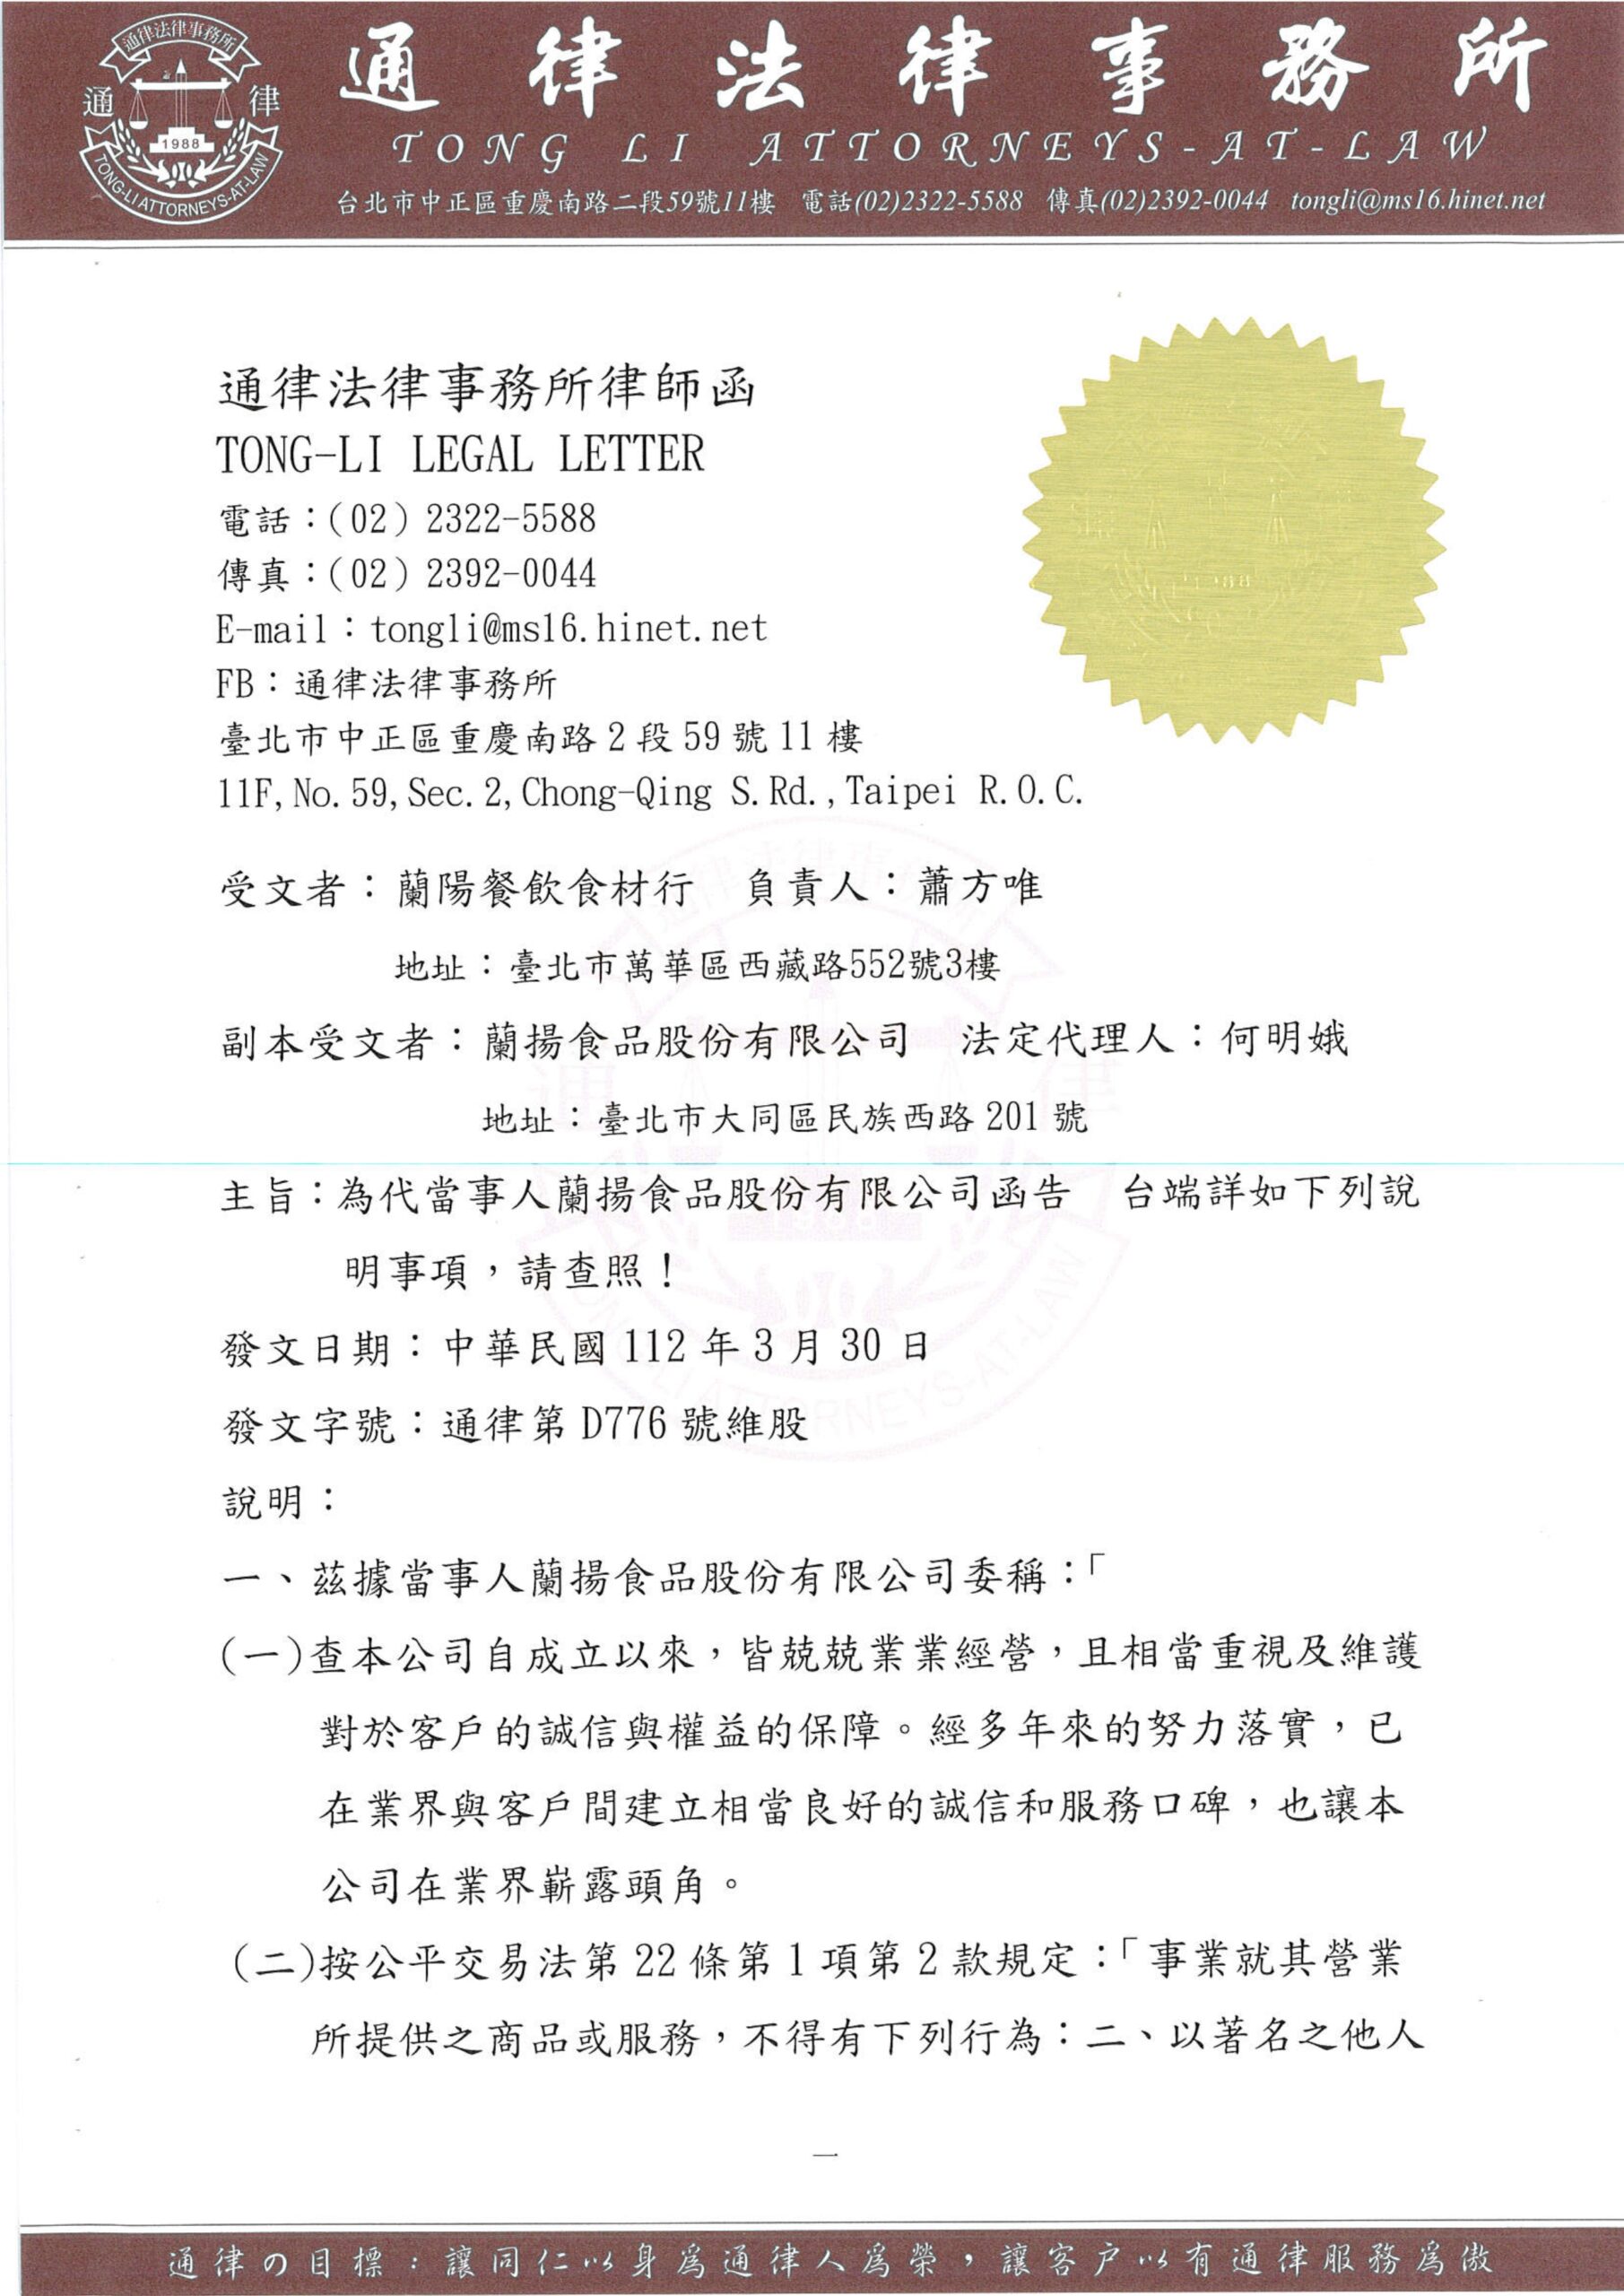 Lanyang Catering and Ingredients Store_Carta del abogado 230331 Recibido_página-0001